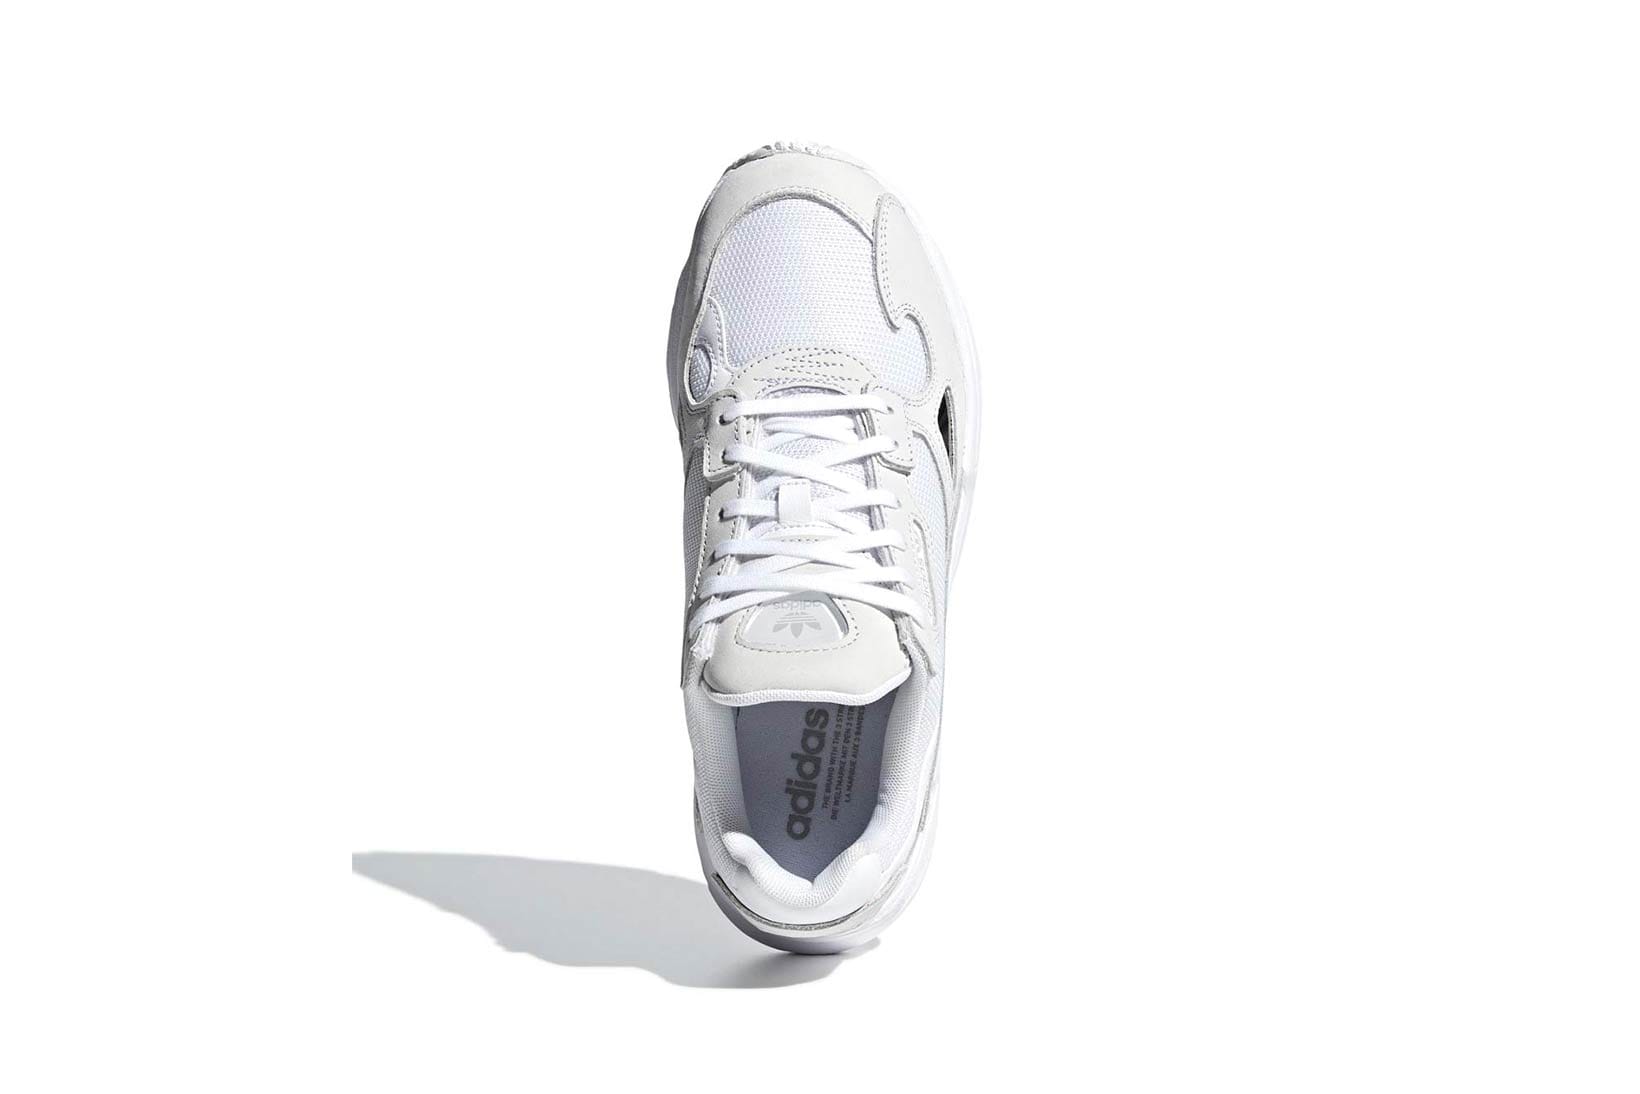 adidas originals falcon sneakers in triple white